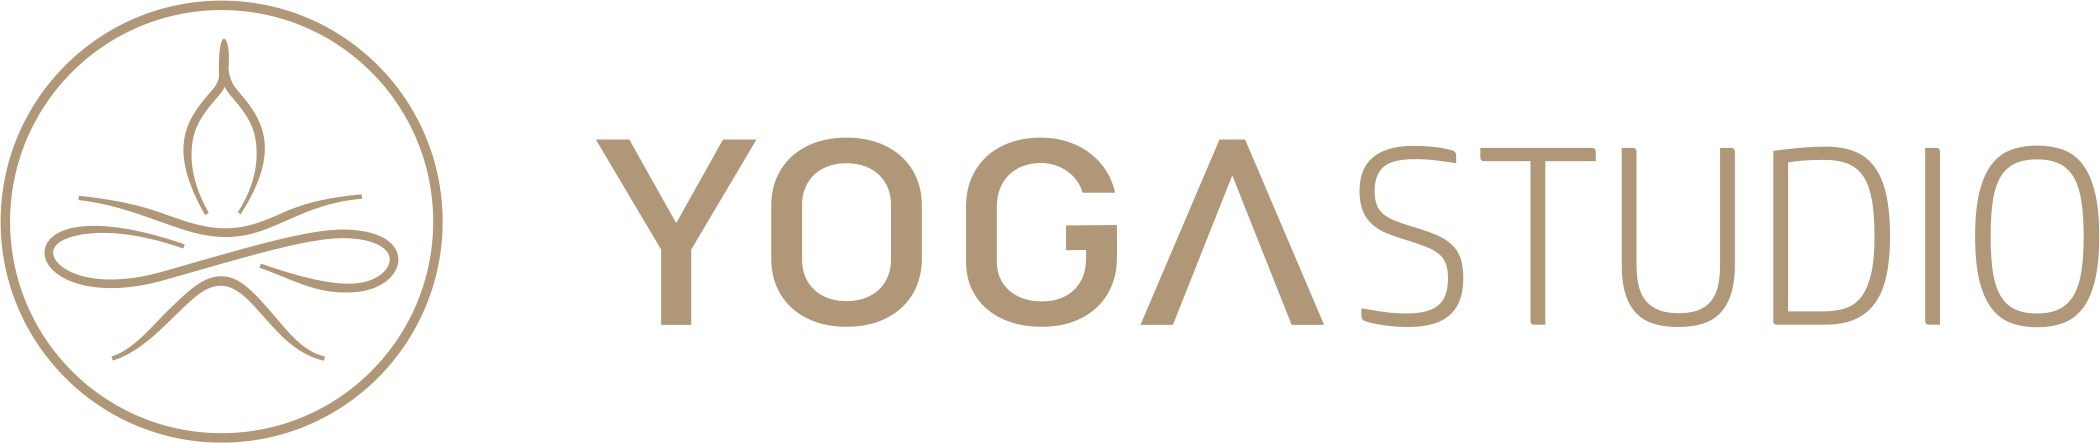 Yoga-Mehnert